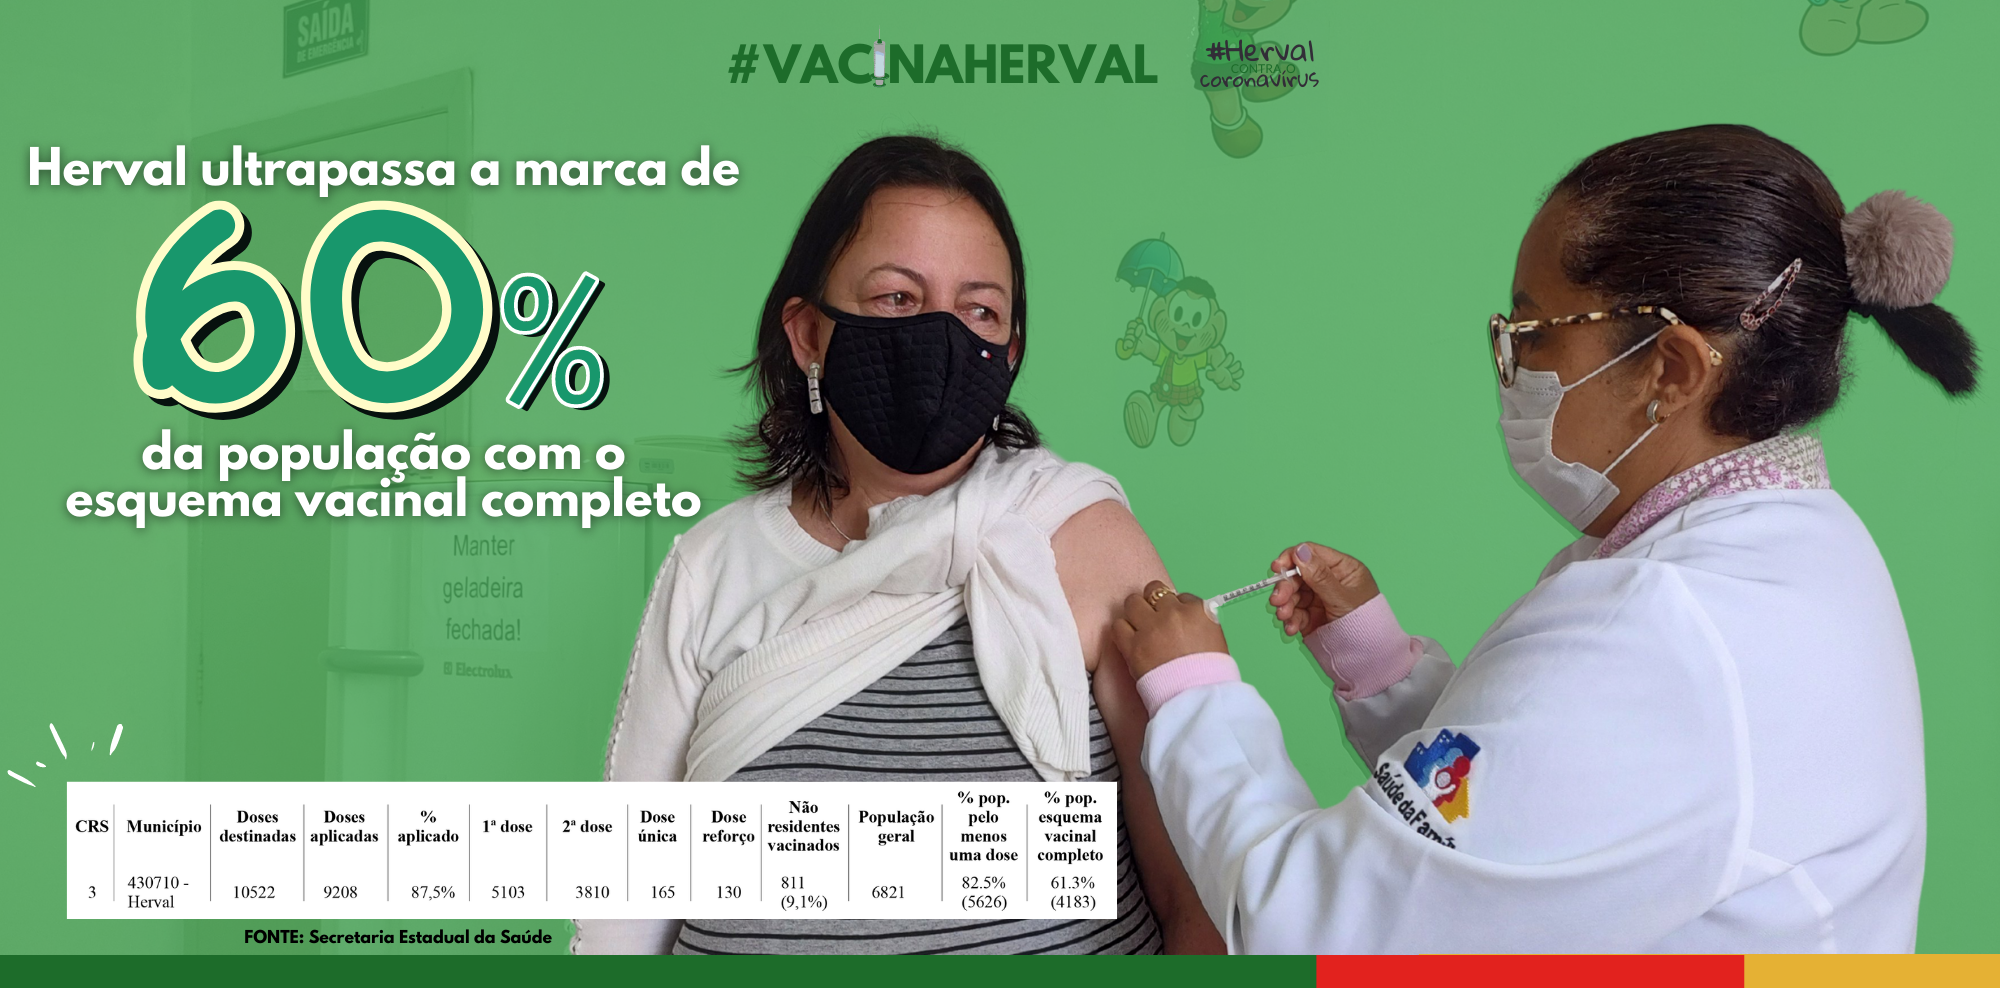 Herval ultrapassa a marca de 60% da população com o esquema vacinal completo